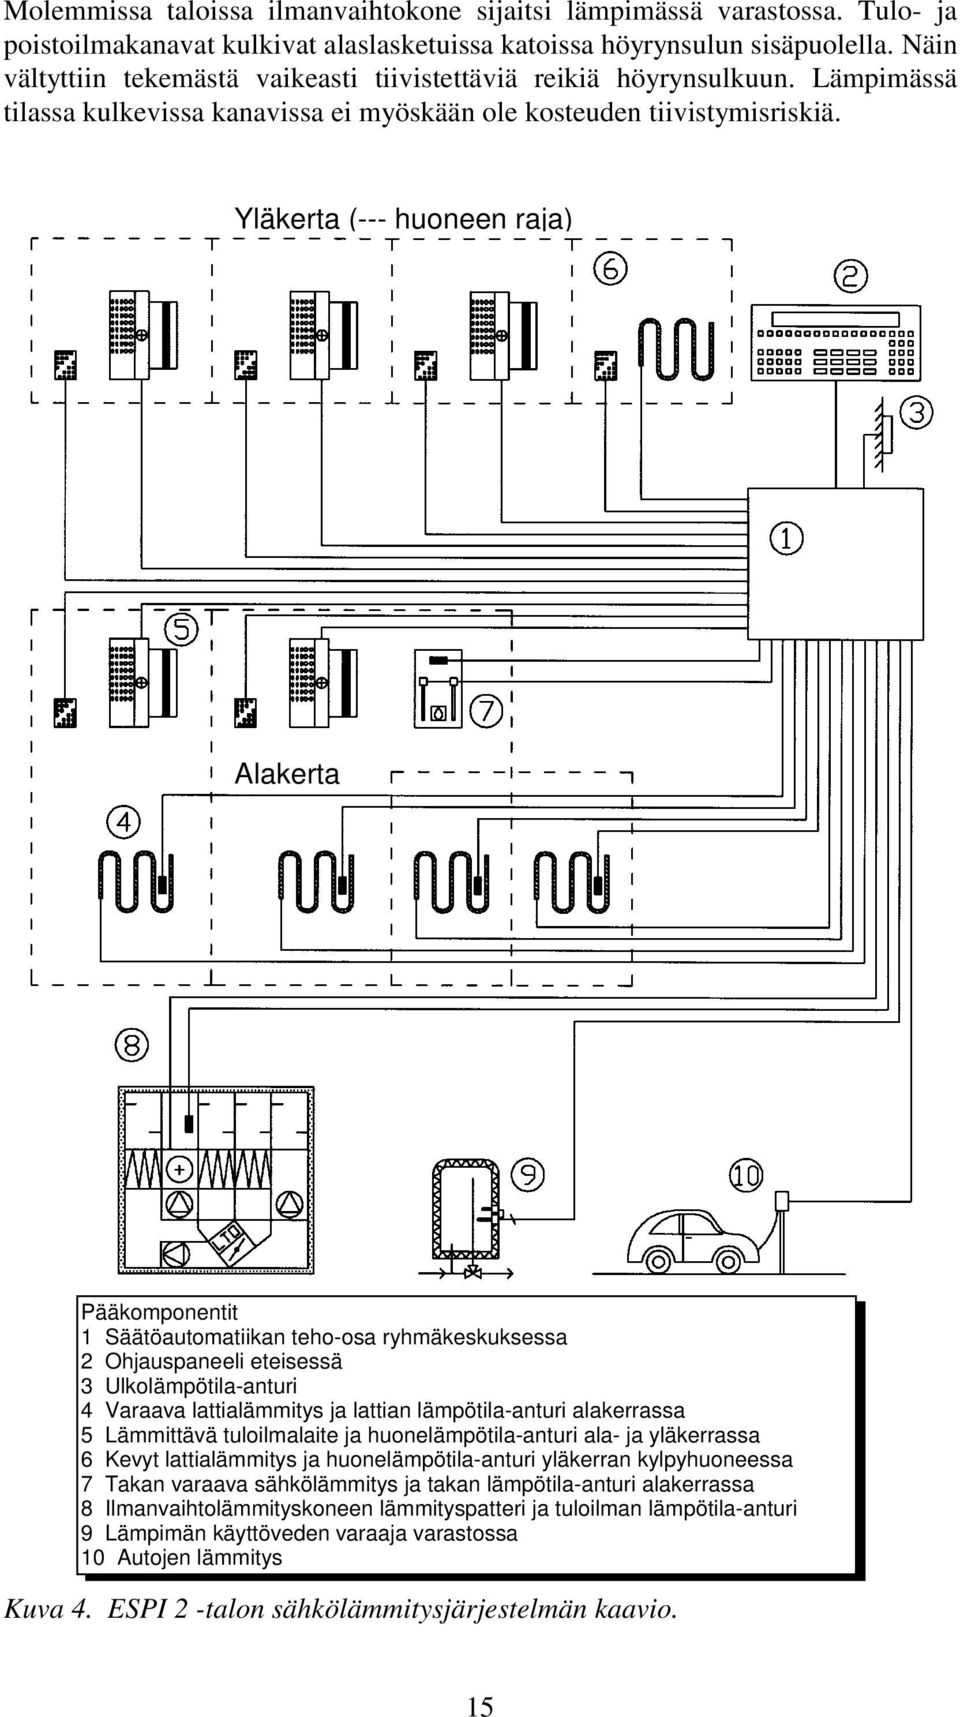 Yläkerta (--- huoneen raja) Alakerta Pääkomponentit 1 Säätöautomatiikan teho-osa ryhmäkeskuksessa 2 Ohjauspaneeli eteisessä 3 Ulkolämpötila-anturi 4 Varaava lattialämmitys ja lattian lämpötila-anturi